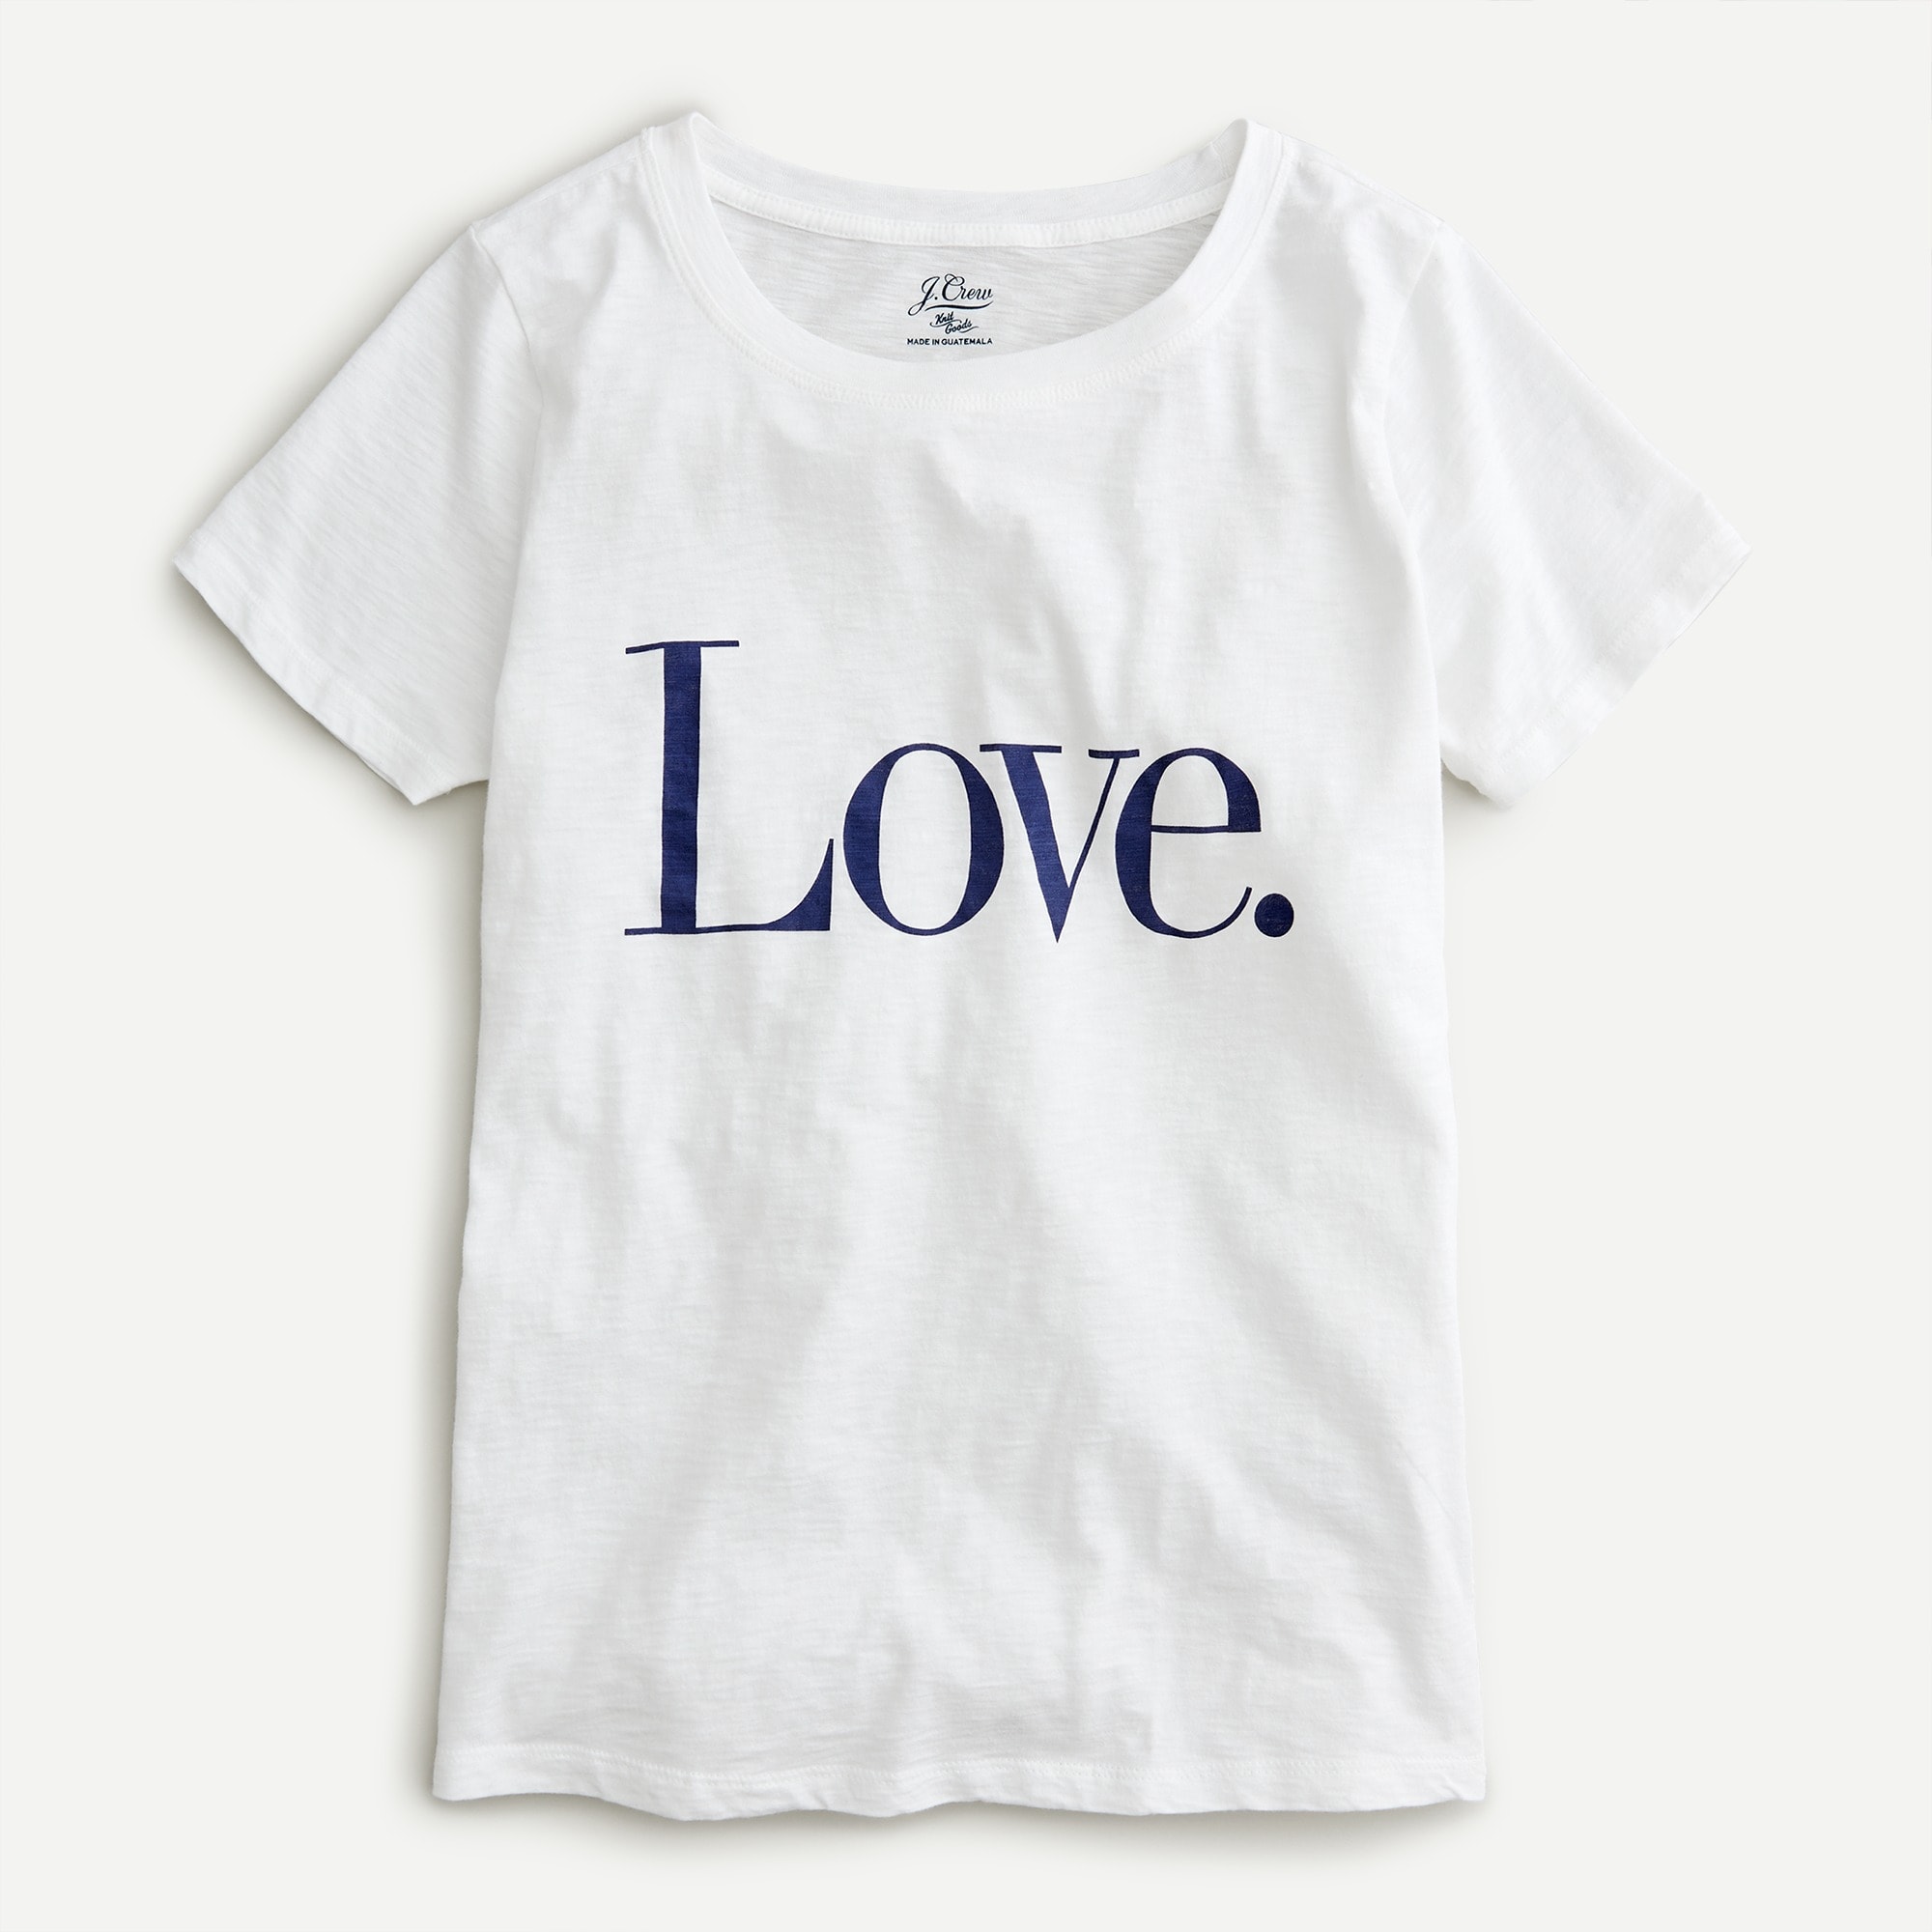 J.Crew: Vintage Cotton Love T-shirt For Women